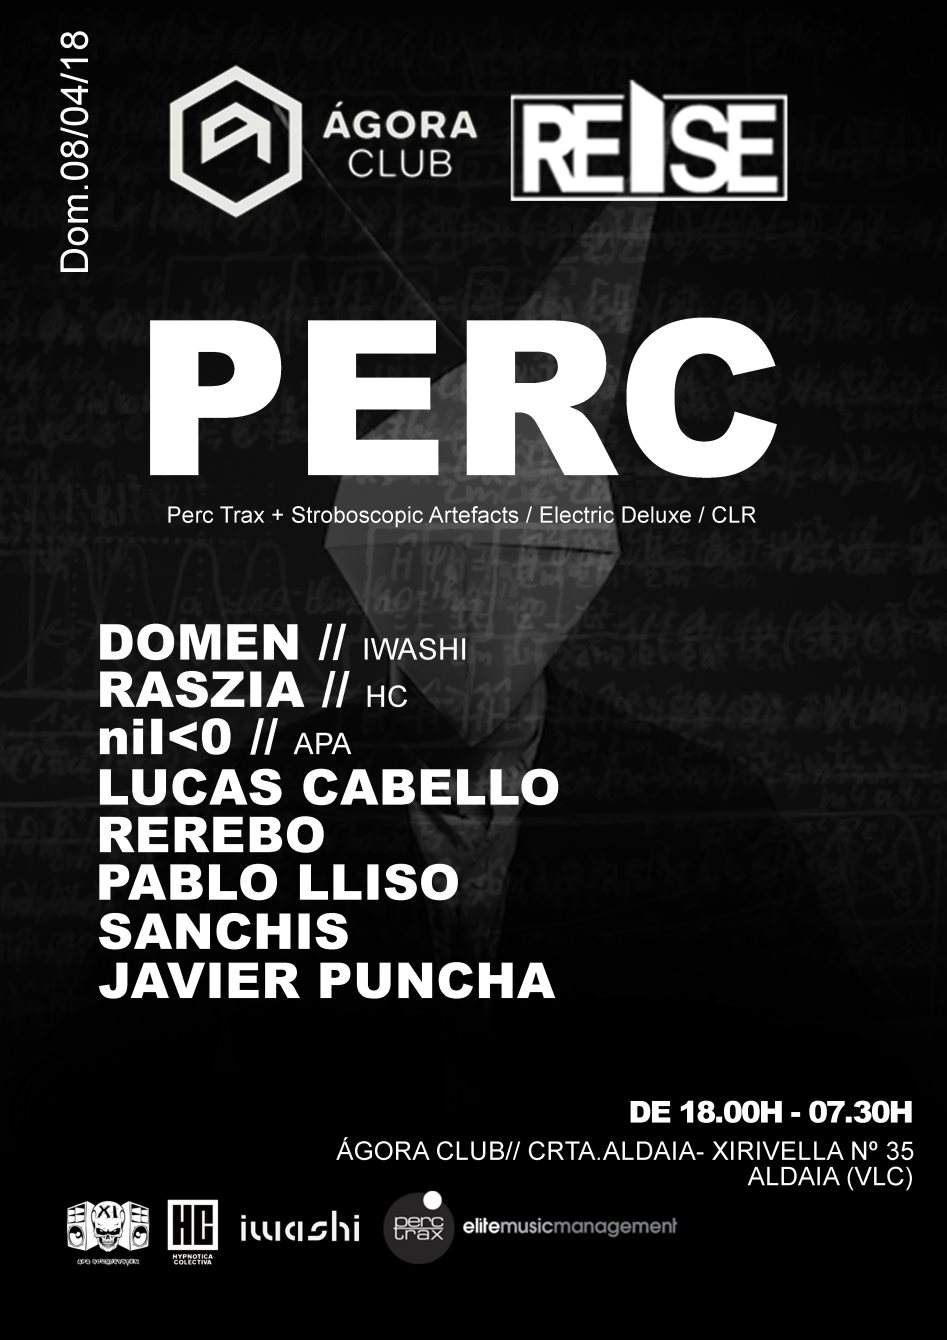 Reise Spain y Ágora Club presentan: Perc Dom - フライヤー表